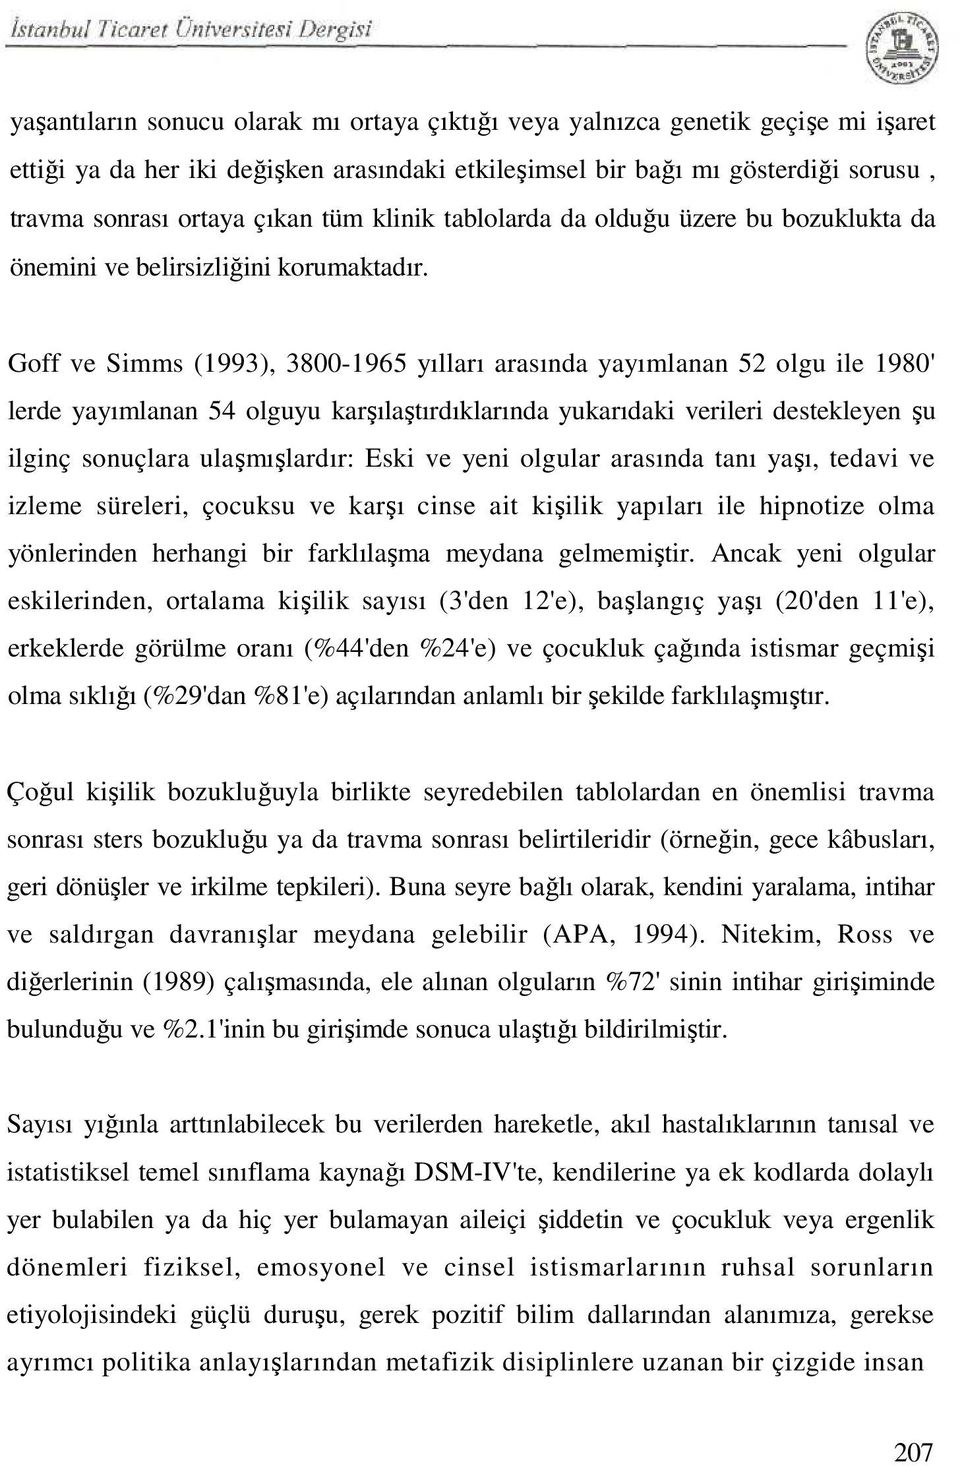 Goff ve Simms (1993), 3800-1965 yılları arasında yayımlanan 52 olgu ile 1980' lerde yayımlanan 54 olguyu karşılaştırdıklarında yukarıdaki verileri destekleyen şu ilginç sonuçlara ulaşmışlardır: Eski